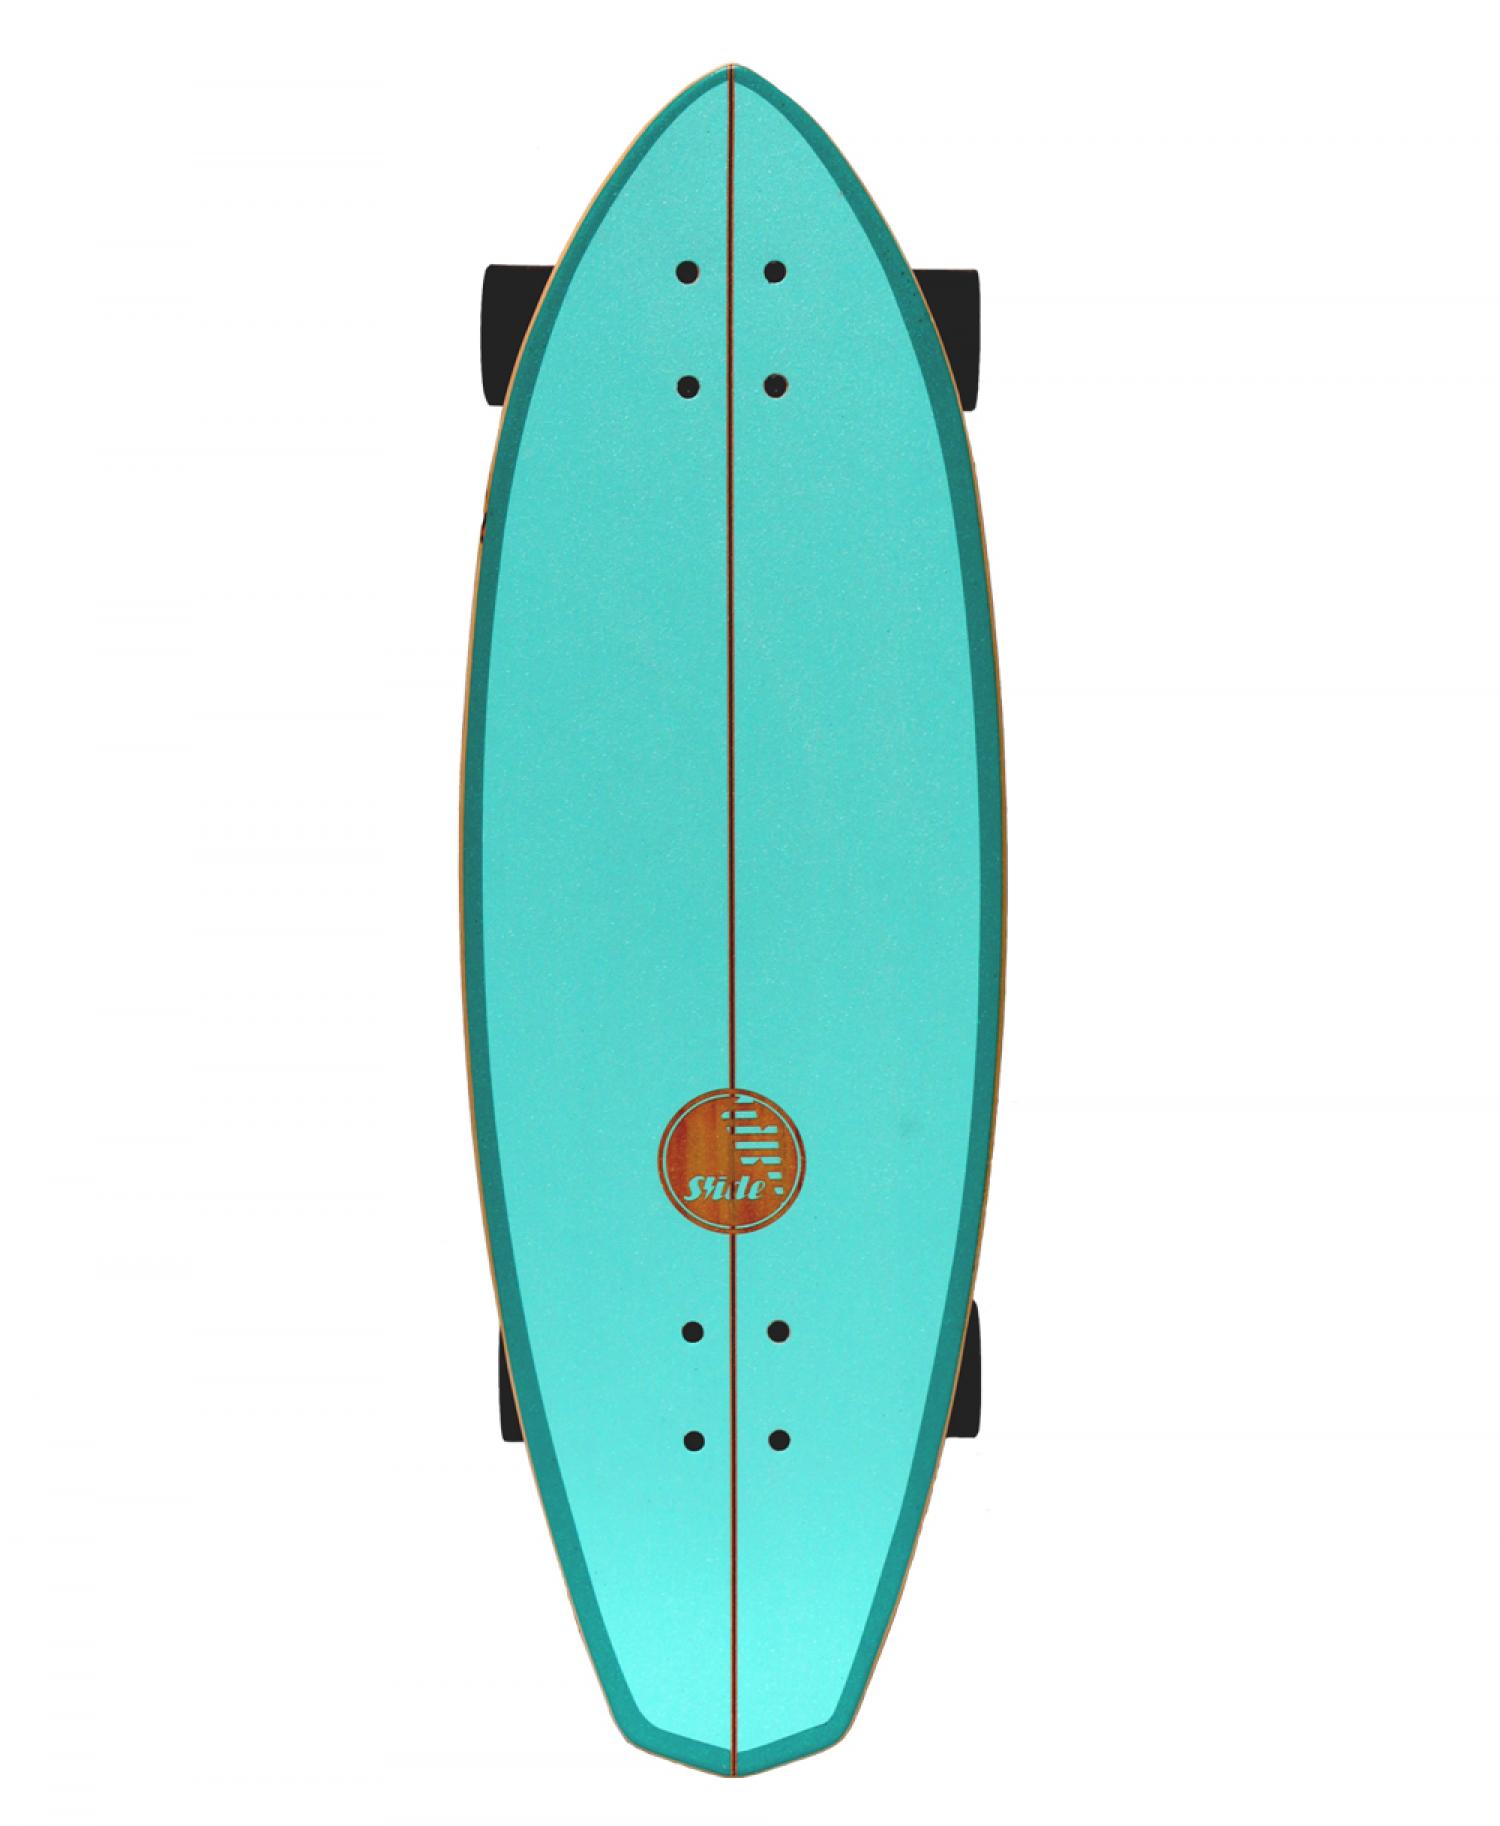 SLIDE SURF SKATE DIAMOND BELHARRRA 32inch